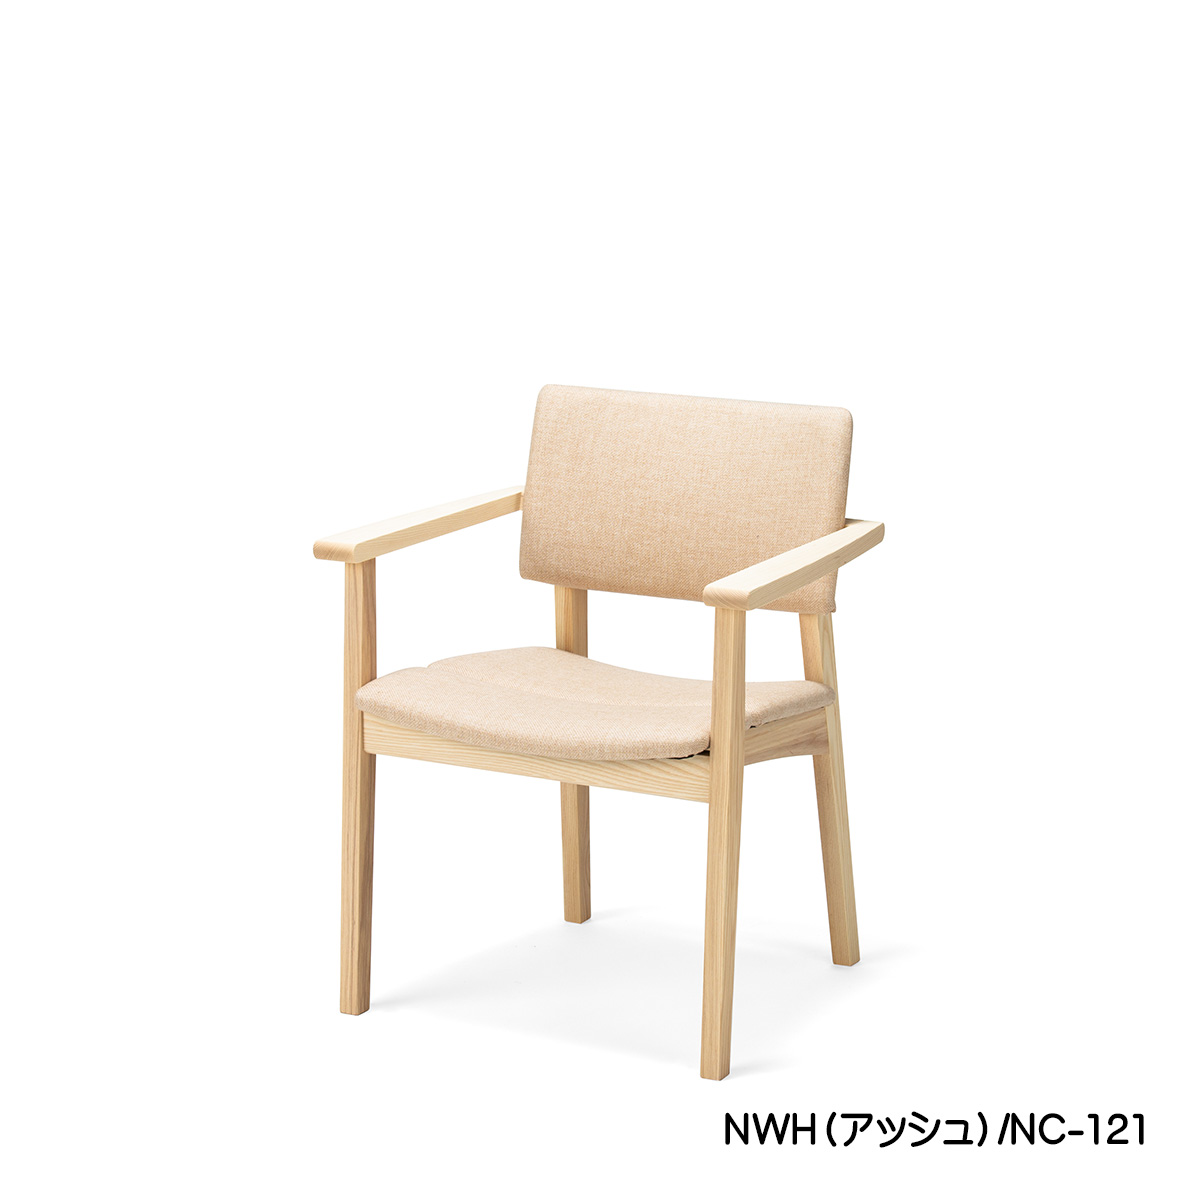 【日本製】肘掛けダイニングチェア「TOPO（トッポ）」（ナチュラルホワイト）は、アッシュ材に特殊なホワイト塗装した白っぽいお色の椅子です。